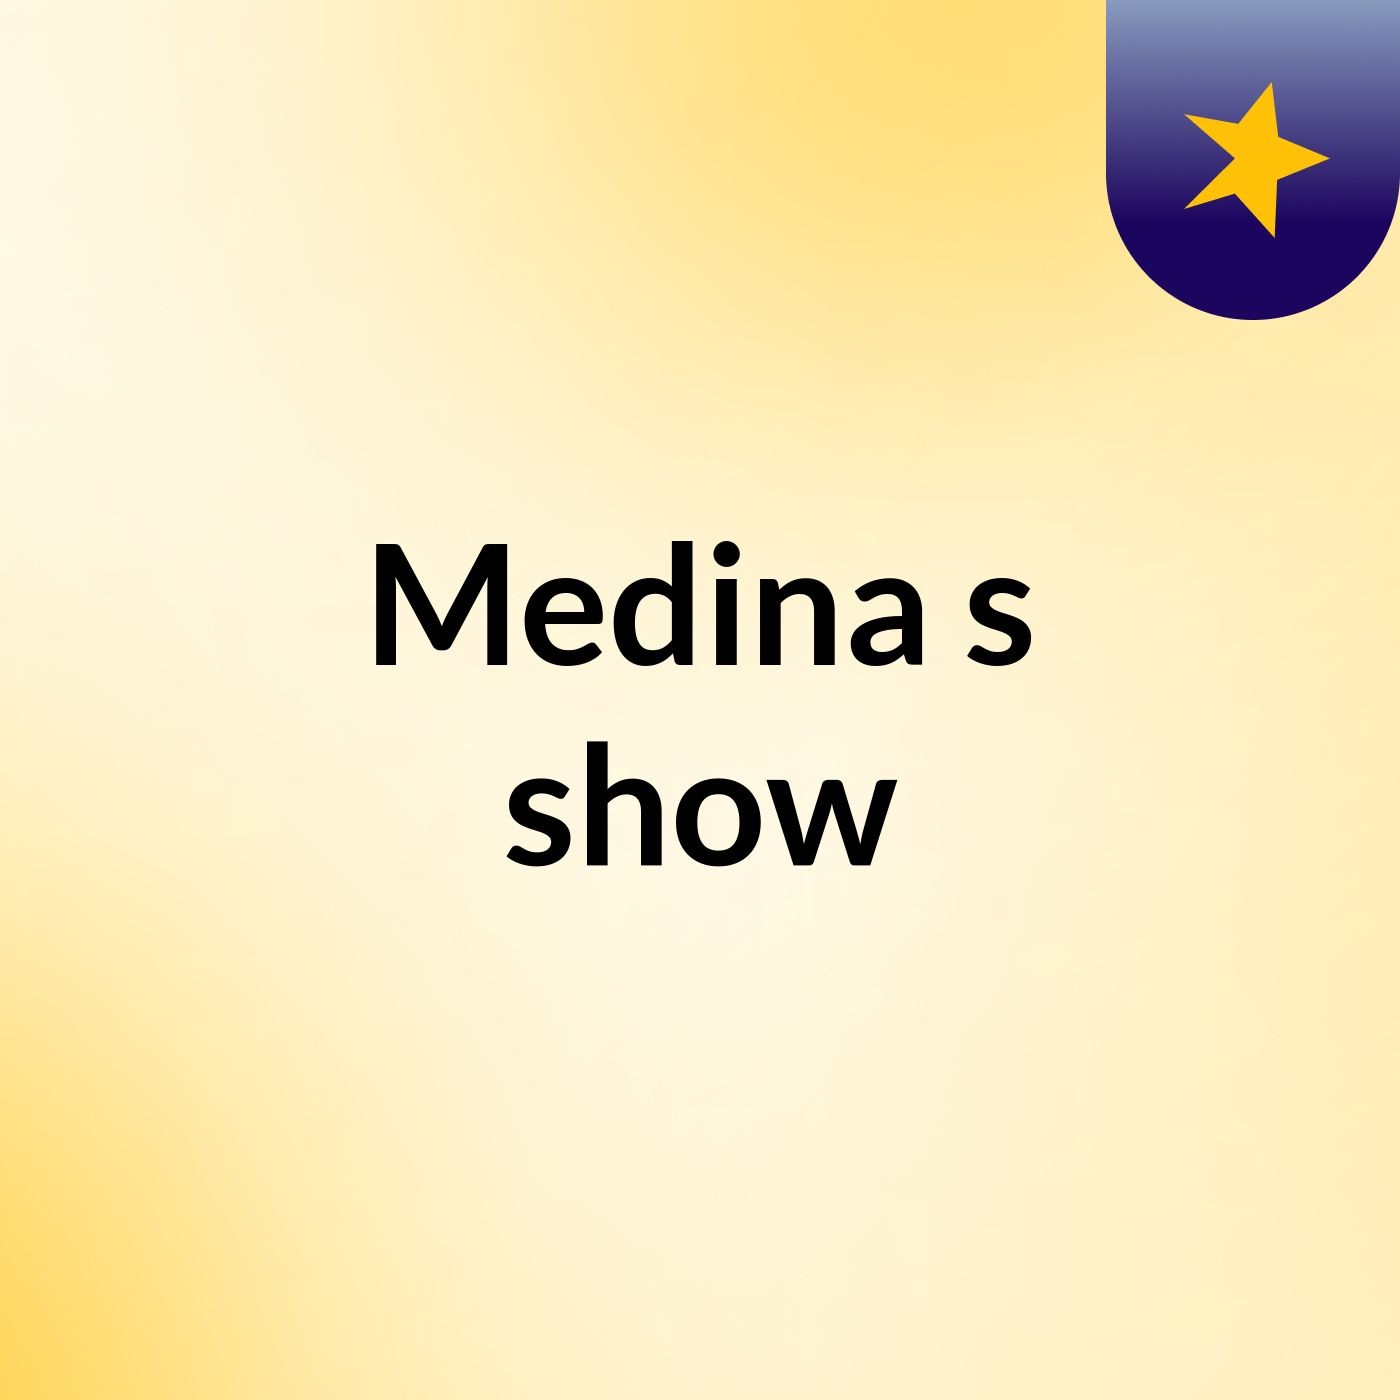 Medina's show